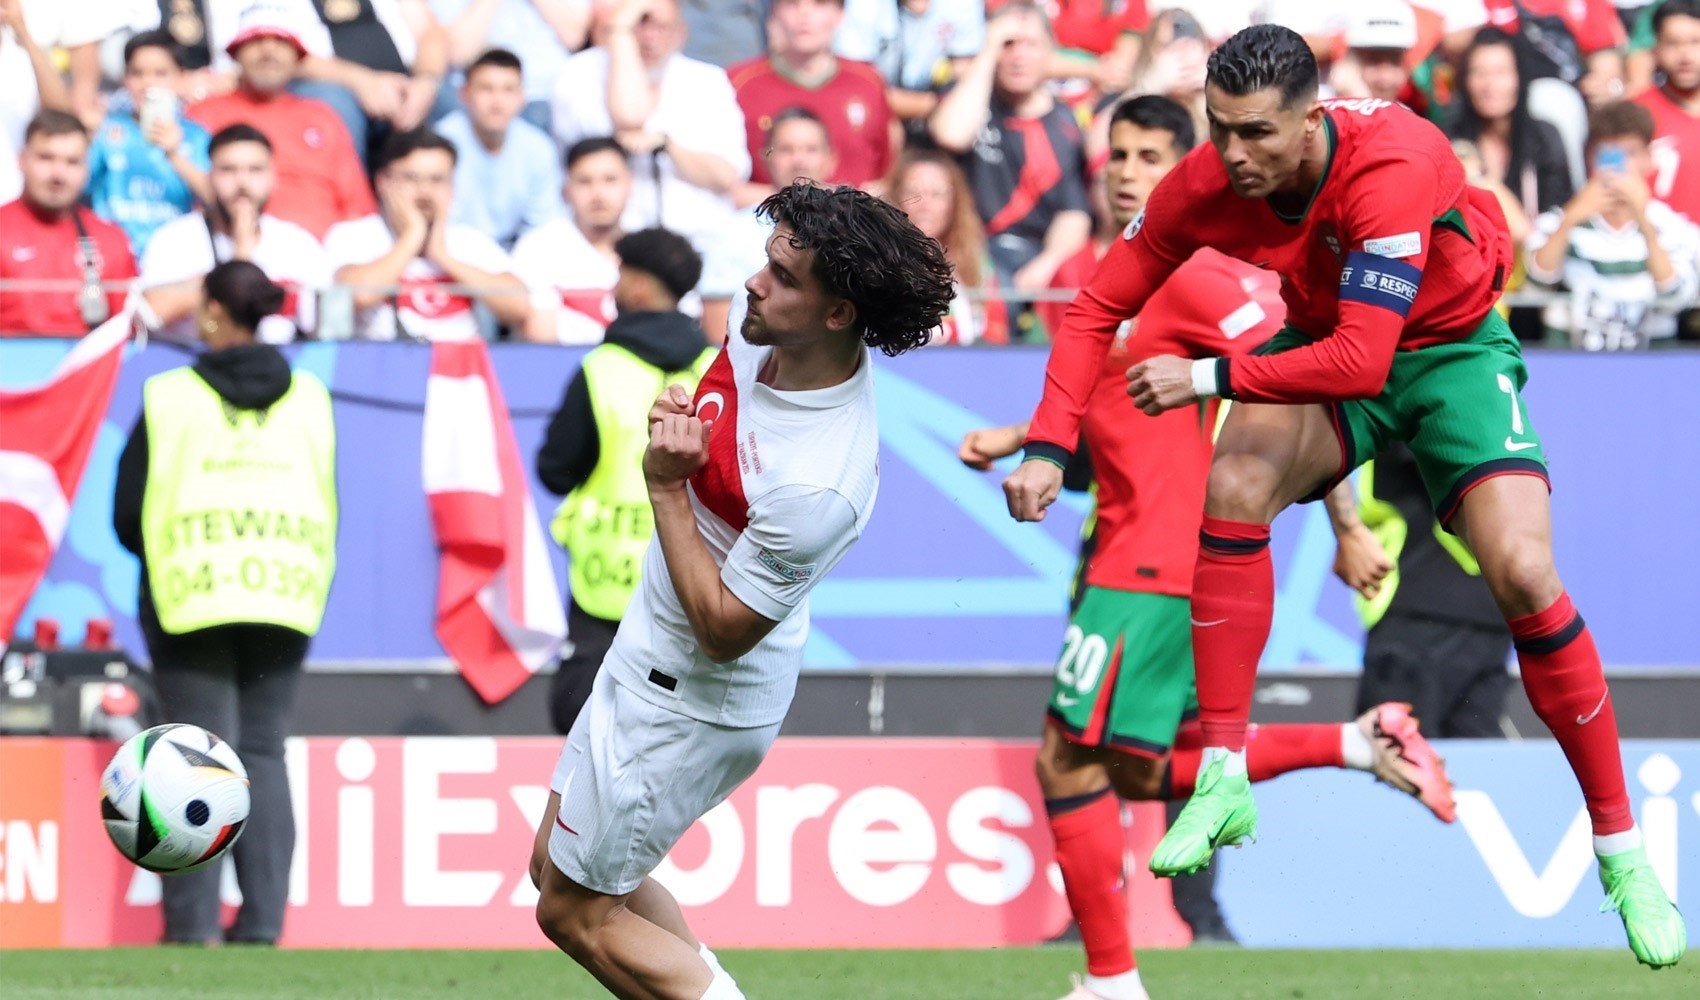 Portekiz'e farklı mağlup olan Türkiye şansını son maça taşıdı